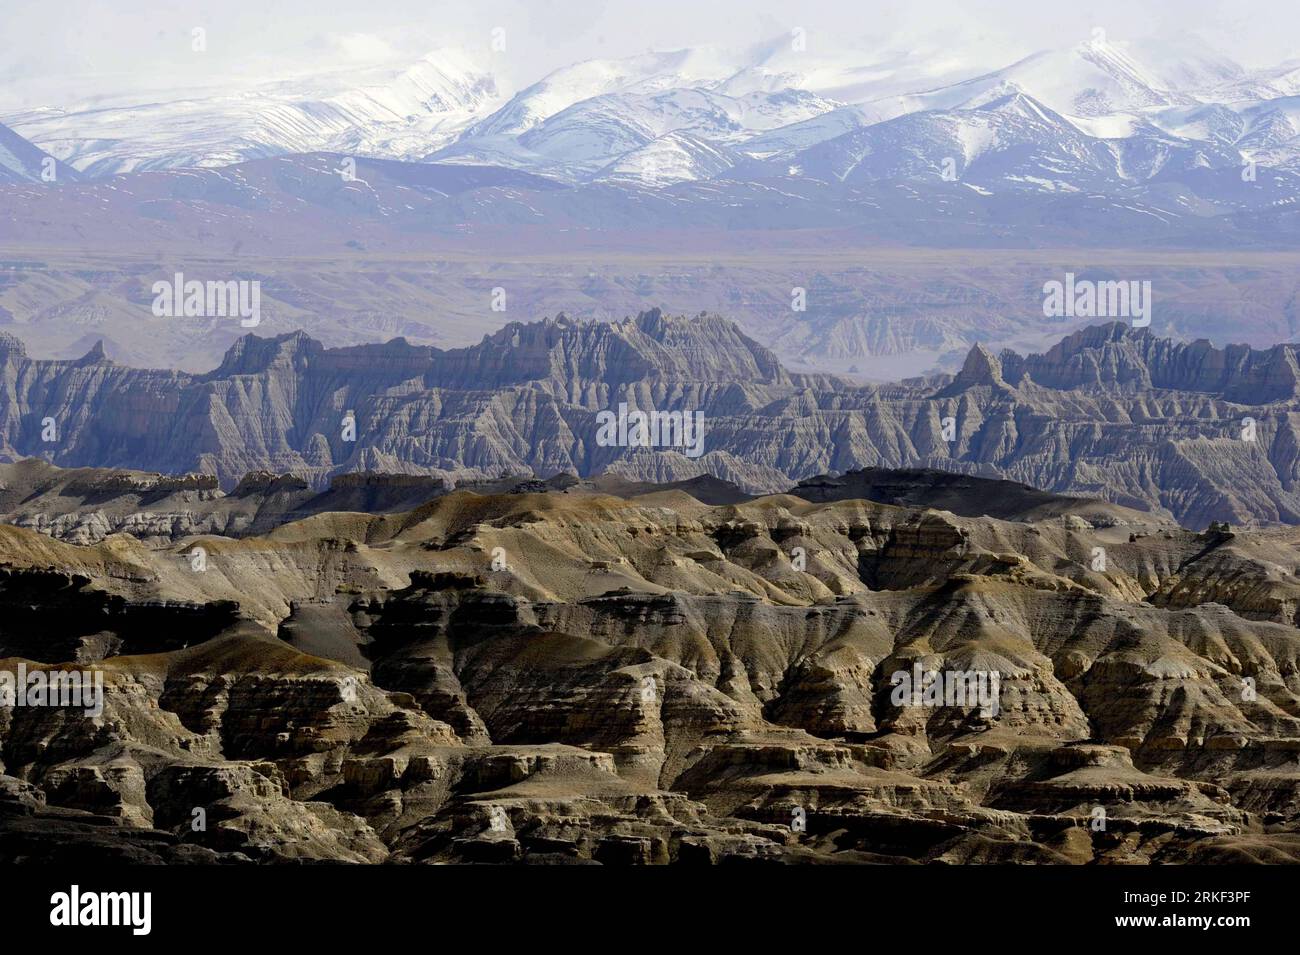 Bildnummer : 55338111 Datum : 07.05.2011 Copyright : imago/Xinhua (110511) -- ZANDA, 11 mai 2011 (Xinhua) -- la photo prise le 7 mai 2011 montre le paysage forestier du sol de Zanda au pied des montagnes de l'Himalaya, dans le comté de Zanda de la préfecture d'Ali, région autonome du Tibet du sud-ouest de la Chine. Le paysage forestier du sol de Zanda, l'ancien sédiment du lac dans les temps anciens, a résulté des changements géographiques au cours de l'orogenèse himalayenne, formant un paysage unique et magnifique. (Xinhua/Purba Zhaxi)(zxh) CHINE-TIBET-ZANDA SOL FORESTIER PAYSAGE (CN) PUBLICATIONxNOTxINxCHN Reisen Natur CHN Asien kbdig Banque D'Images